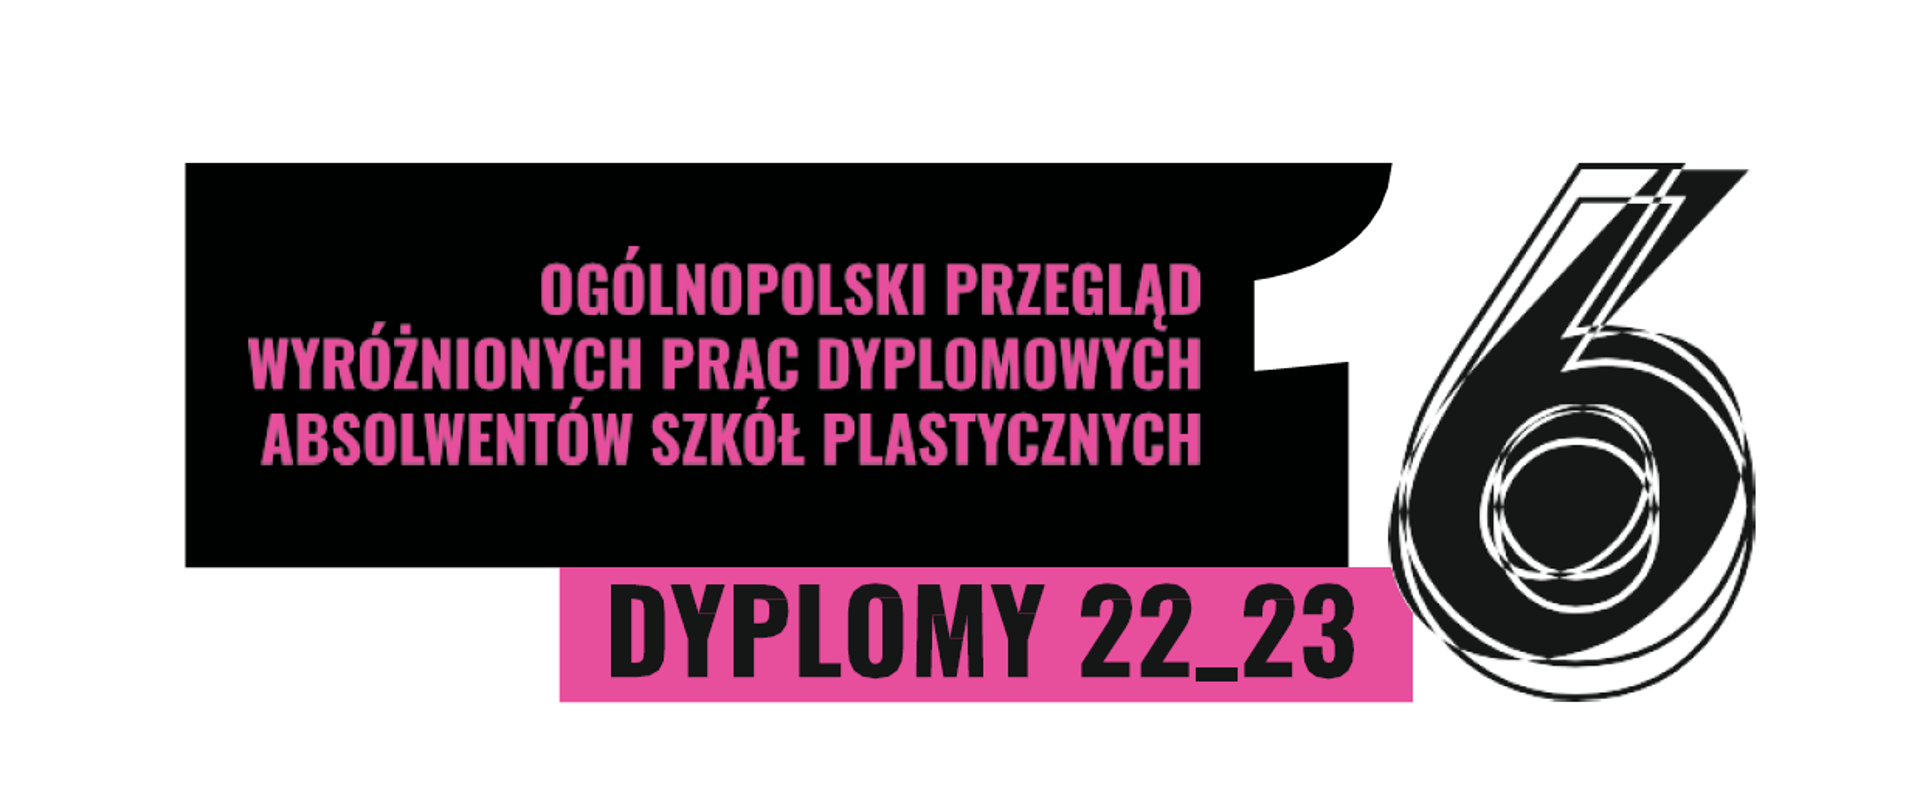 16 Ogólnopolski przegląd wyróżnionych prac dyplomowych absolwentów szkół plastycznych